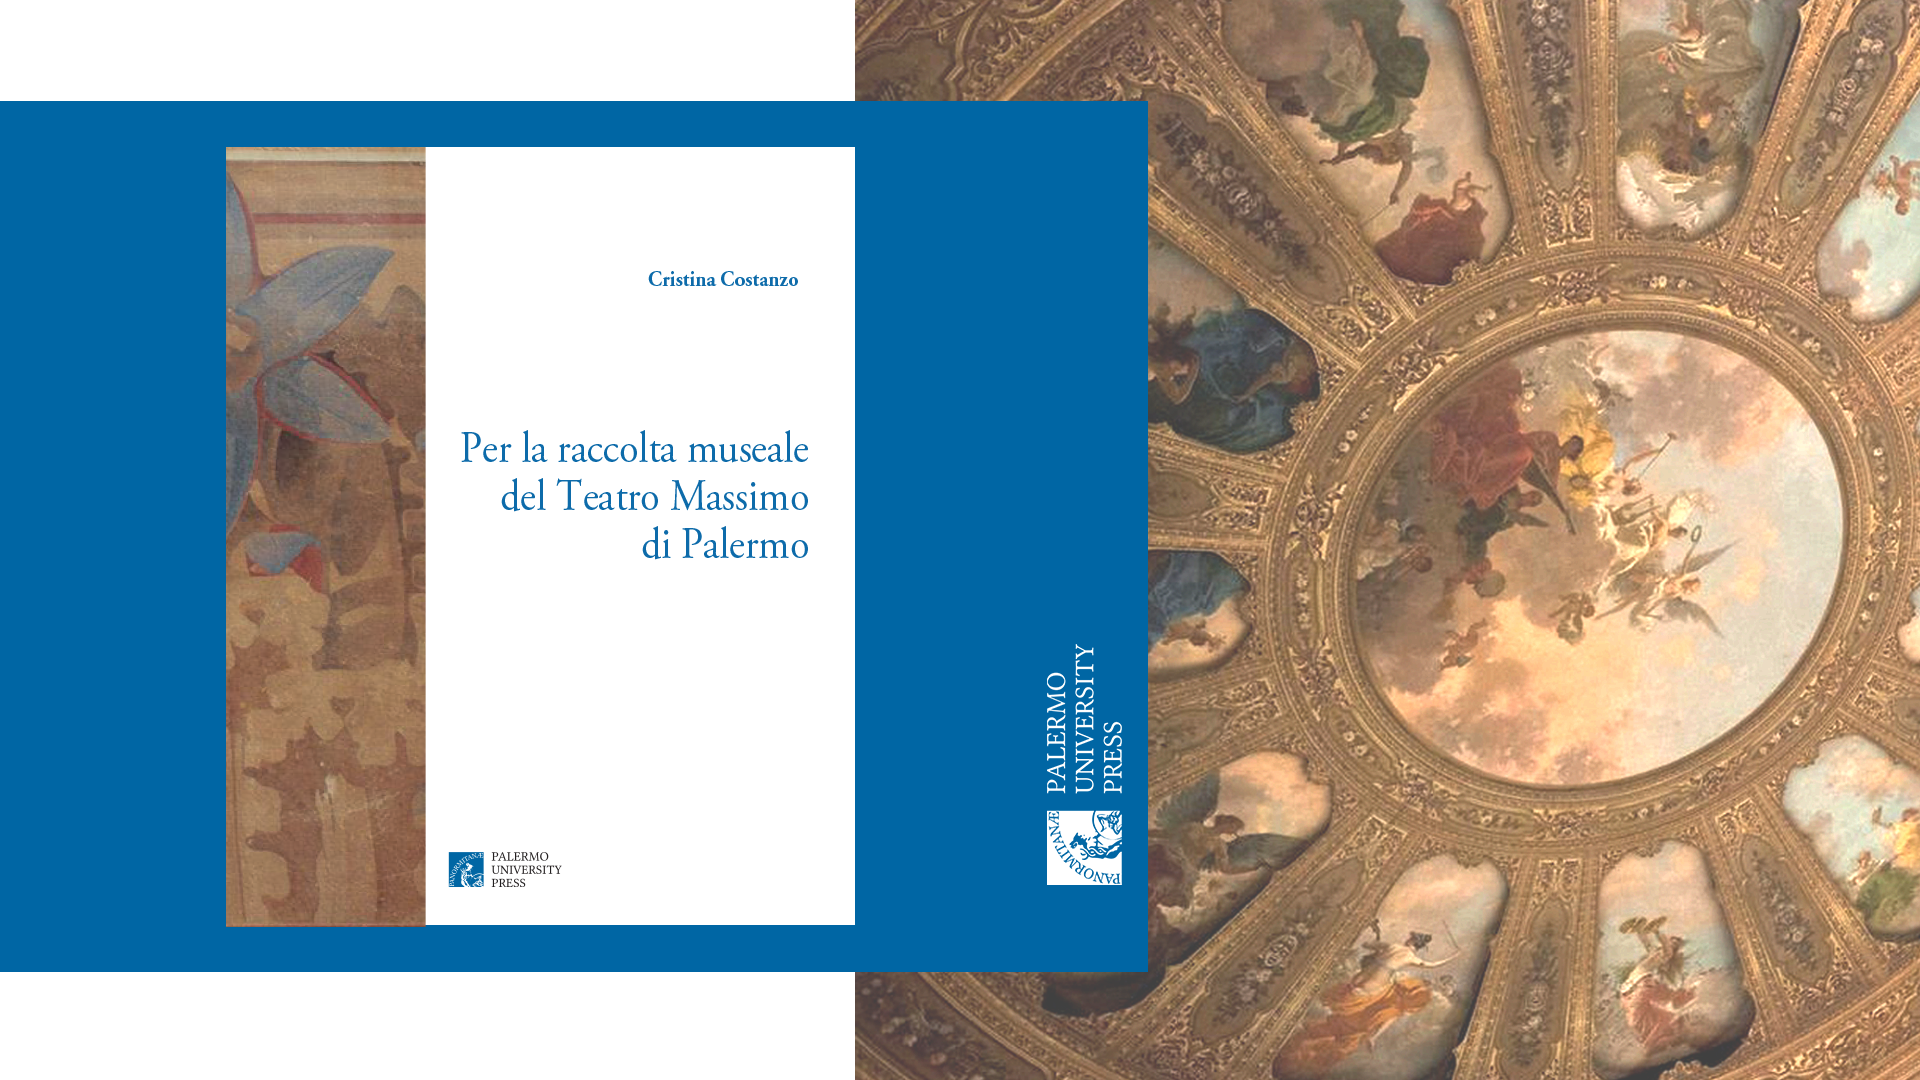 Presentazione del libro "Per la raccolta museale del Teatro Massimo di Palermo di Cristina Costanzo